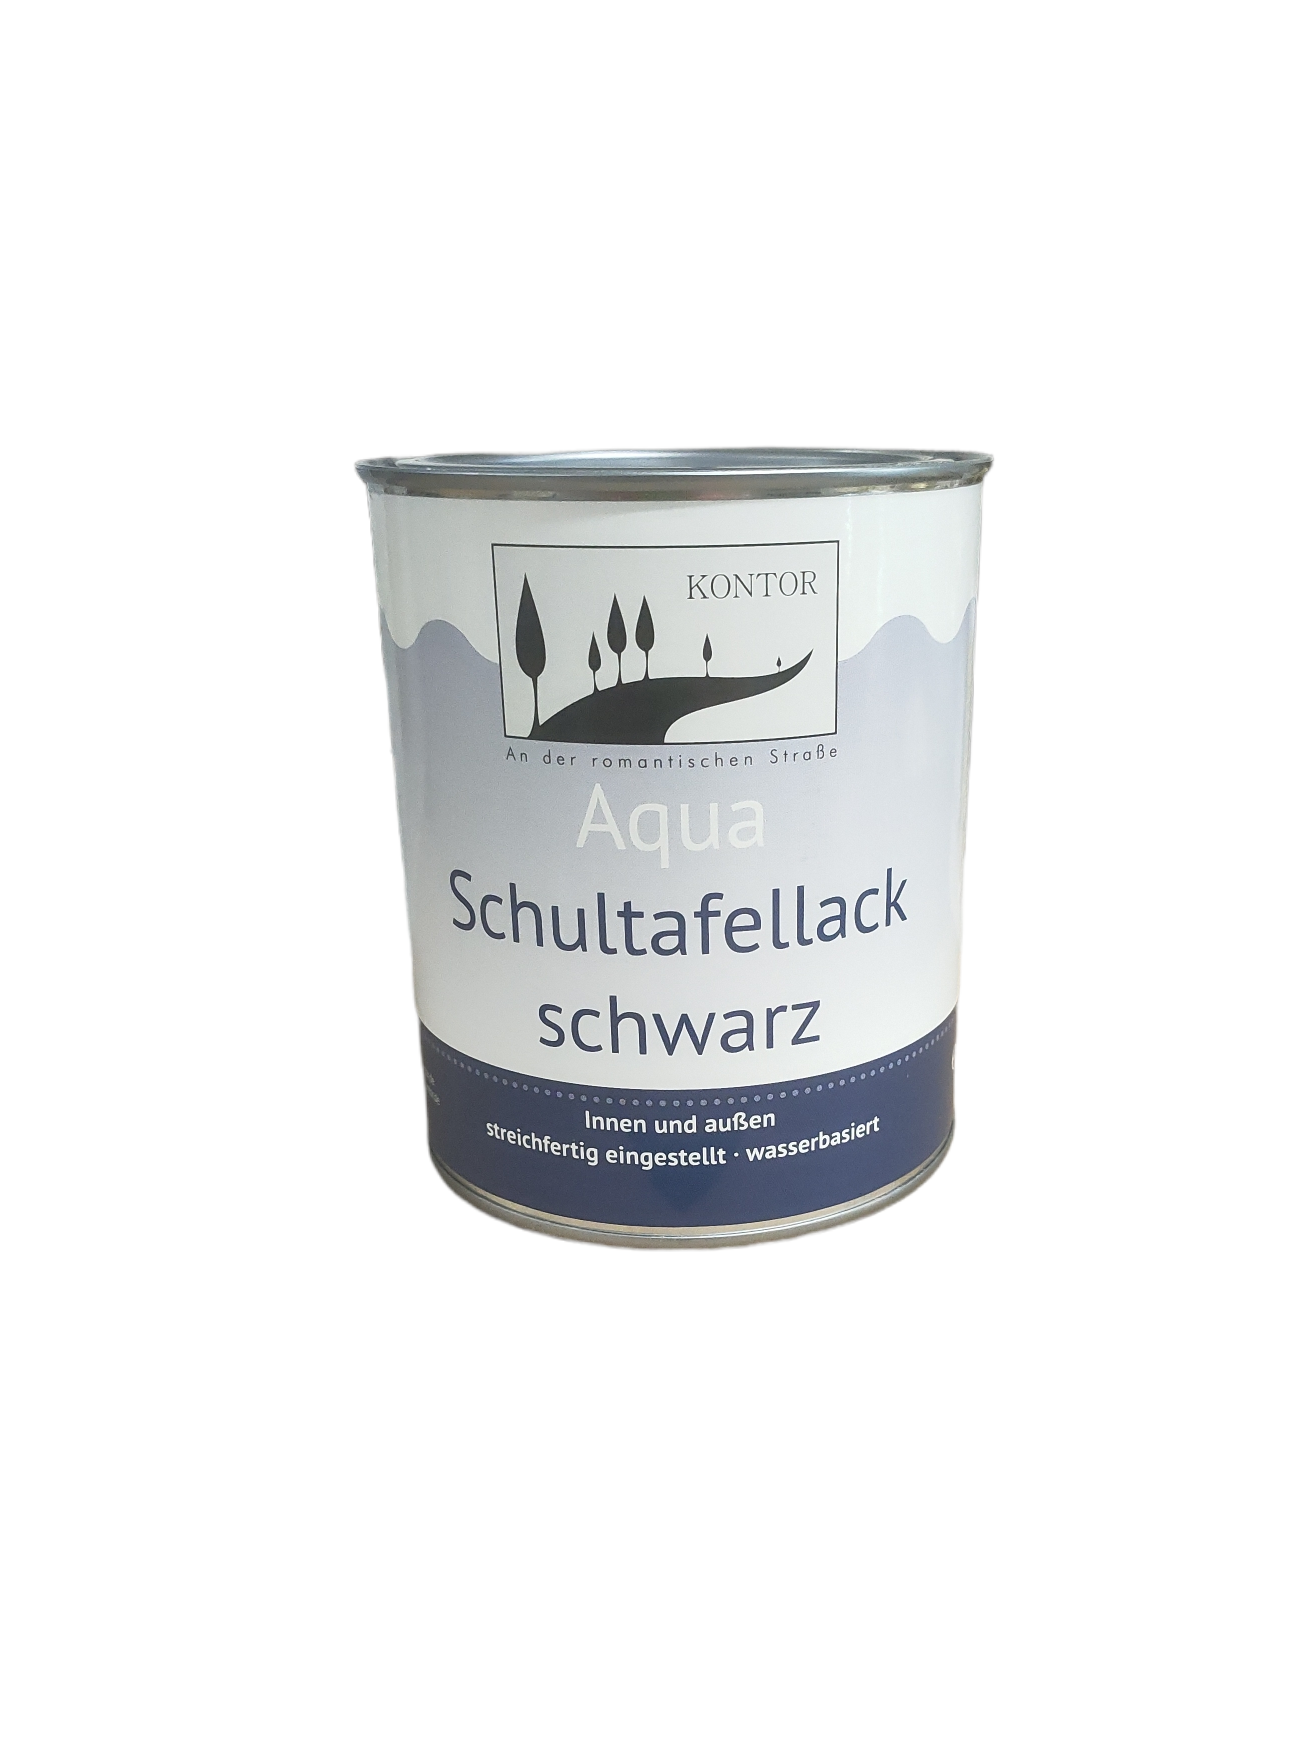 Kontor Aqua Schultafellack Schwarz 750ml